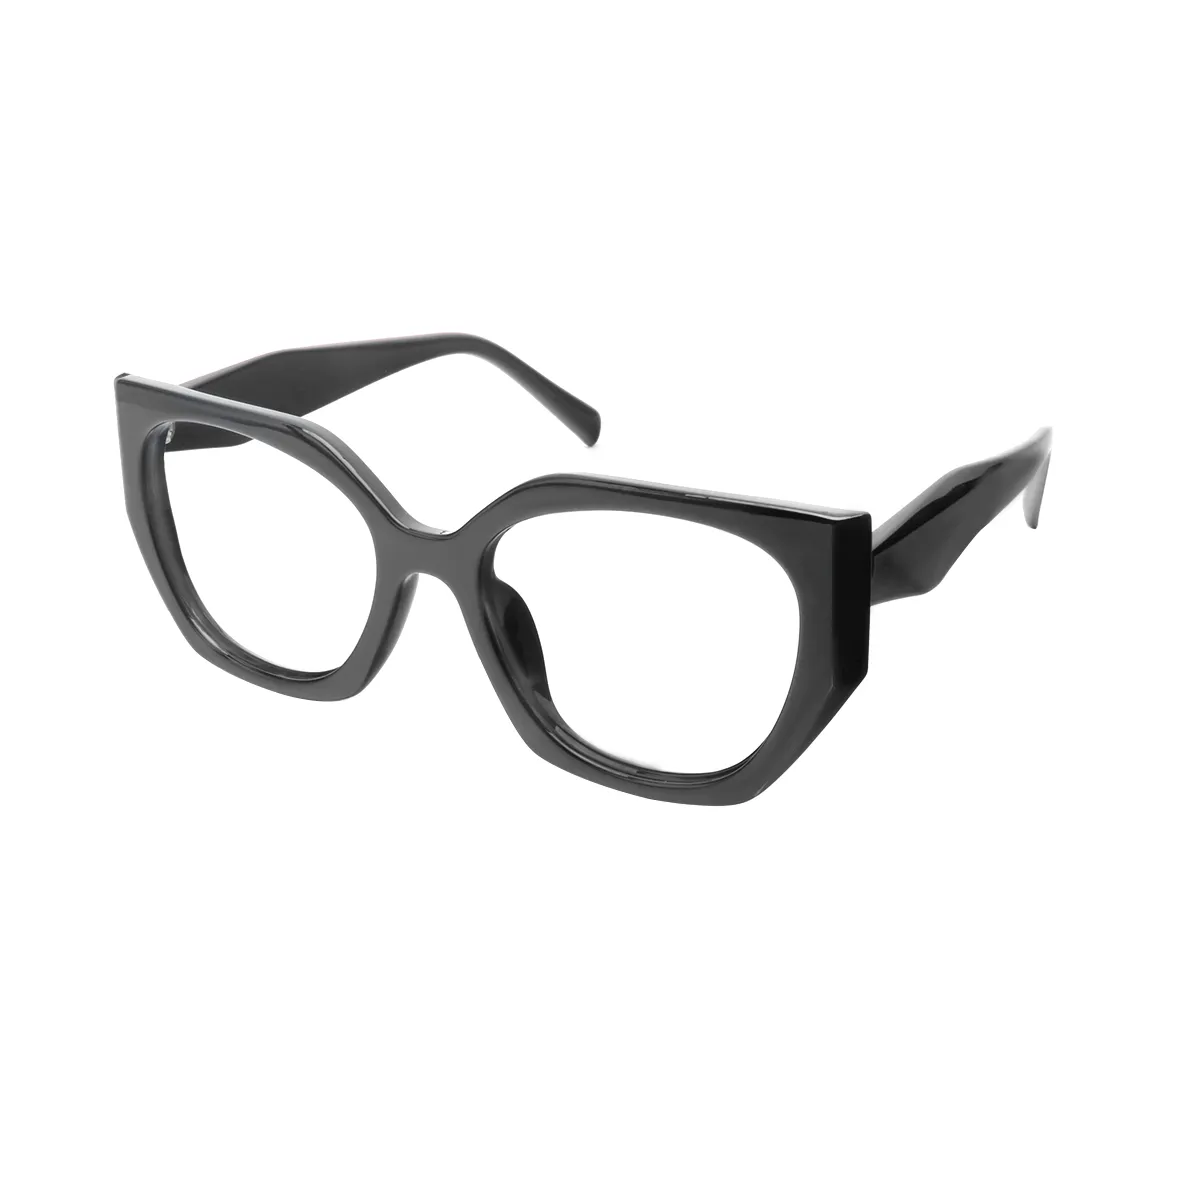 Herring - Geometric Black Glasses for Women - EFE